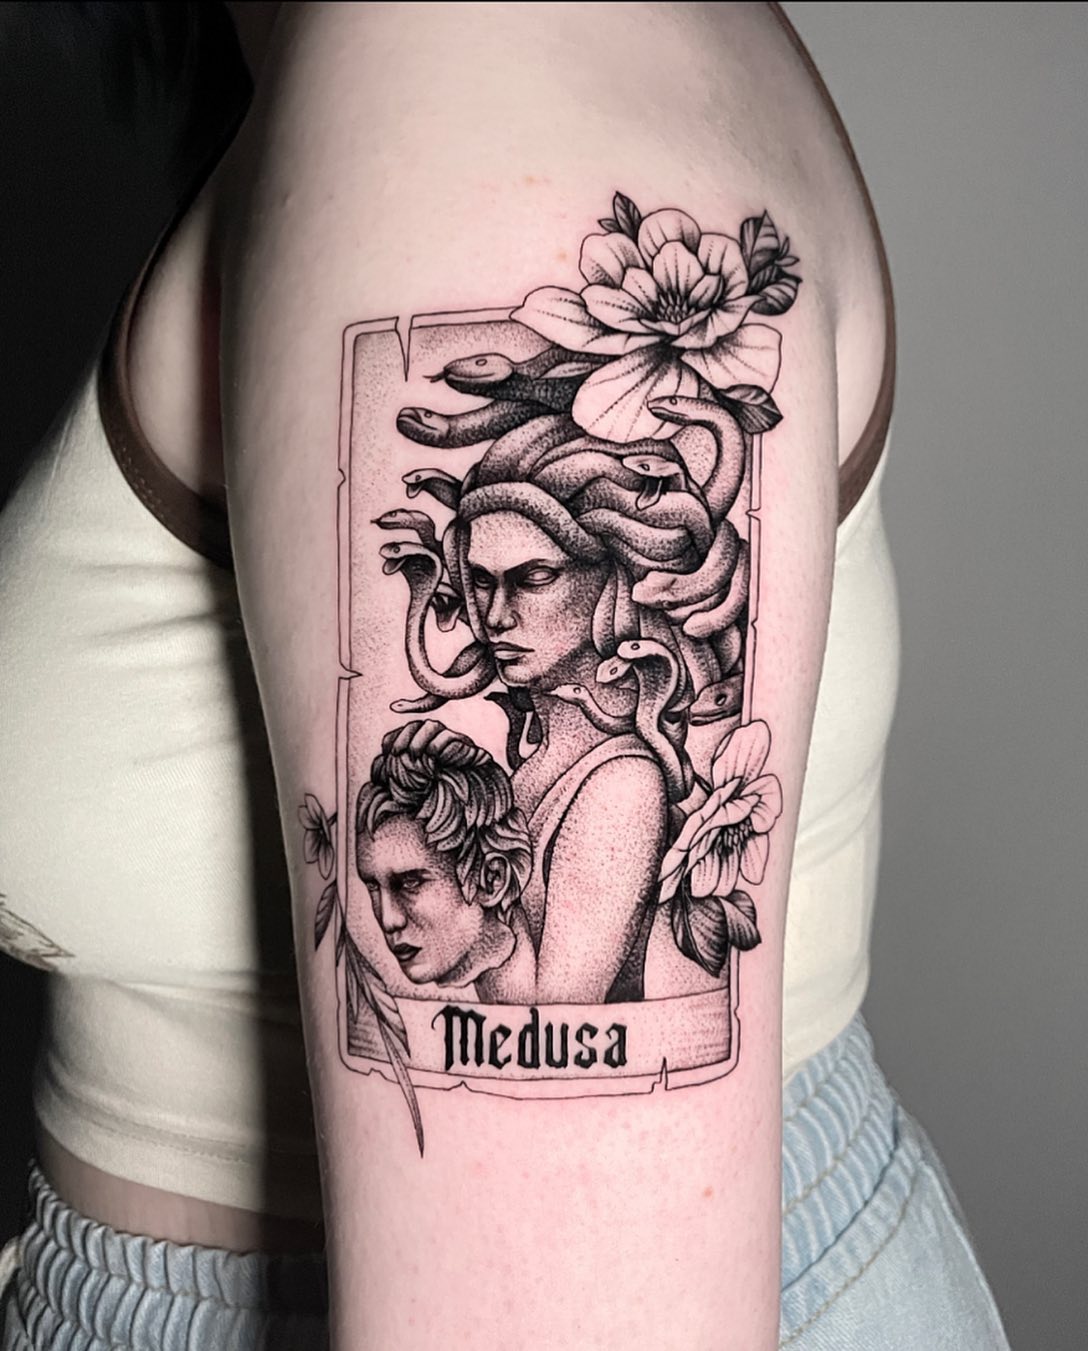 Medusa and Head Tattoo 